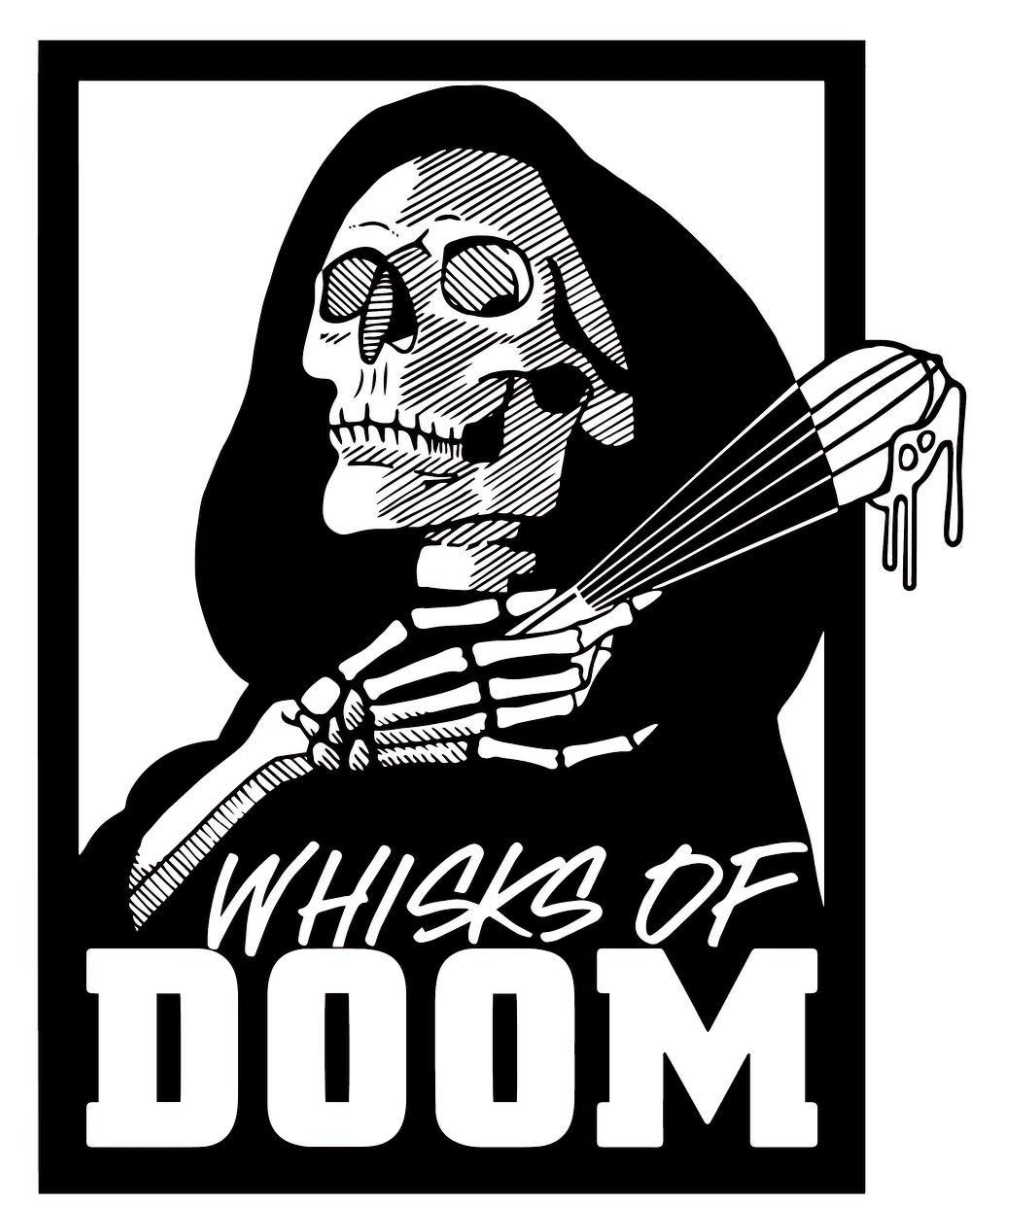 Whisks of Doom